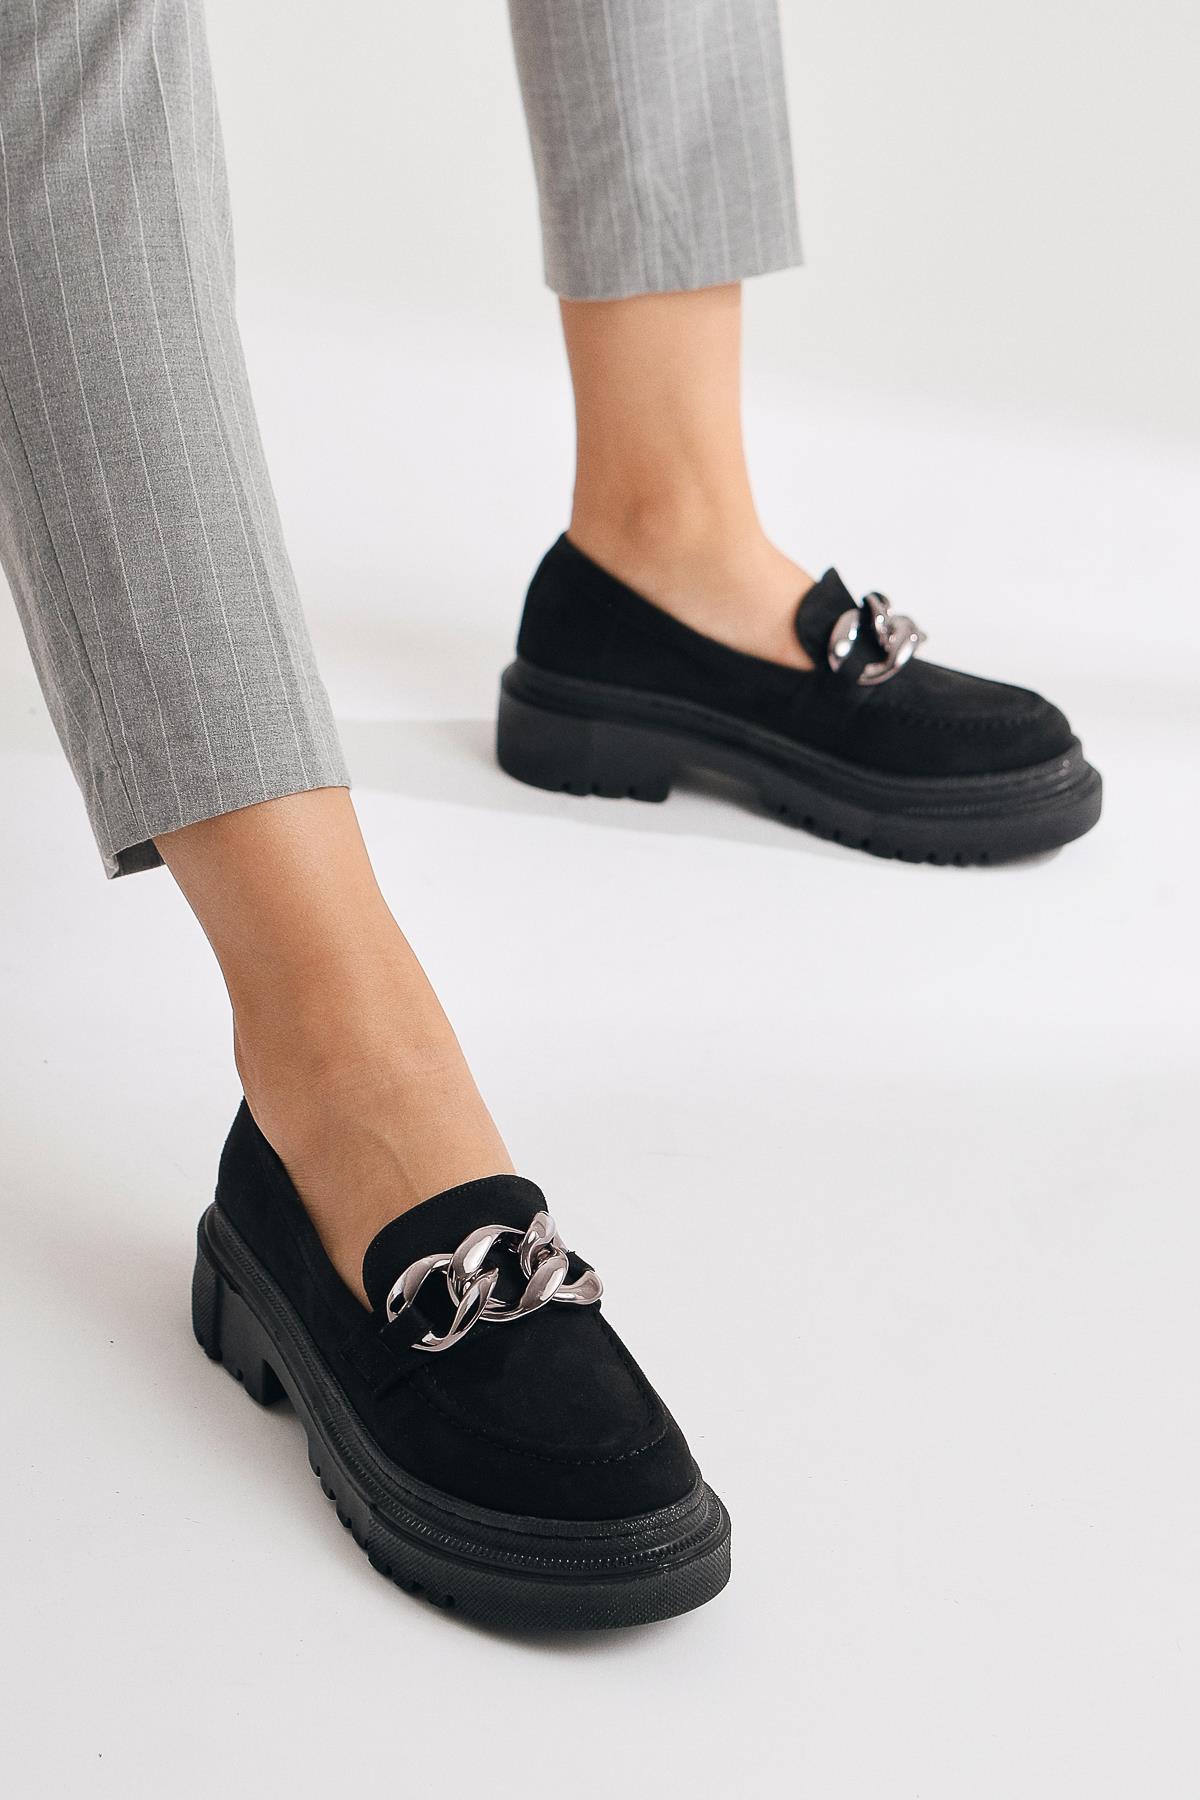 Geraldine Siyah Süet Zincir Toka Detaylı Oxford Ayakkabı | Limoya.com ile  Modayı Keşfet!